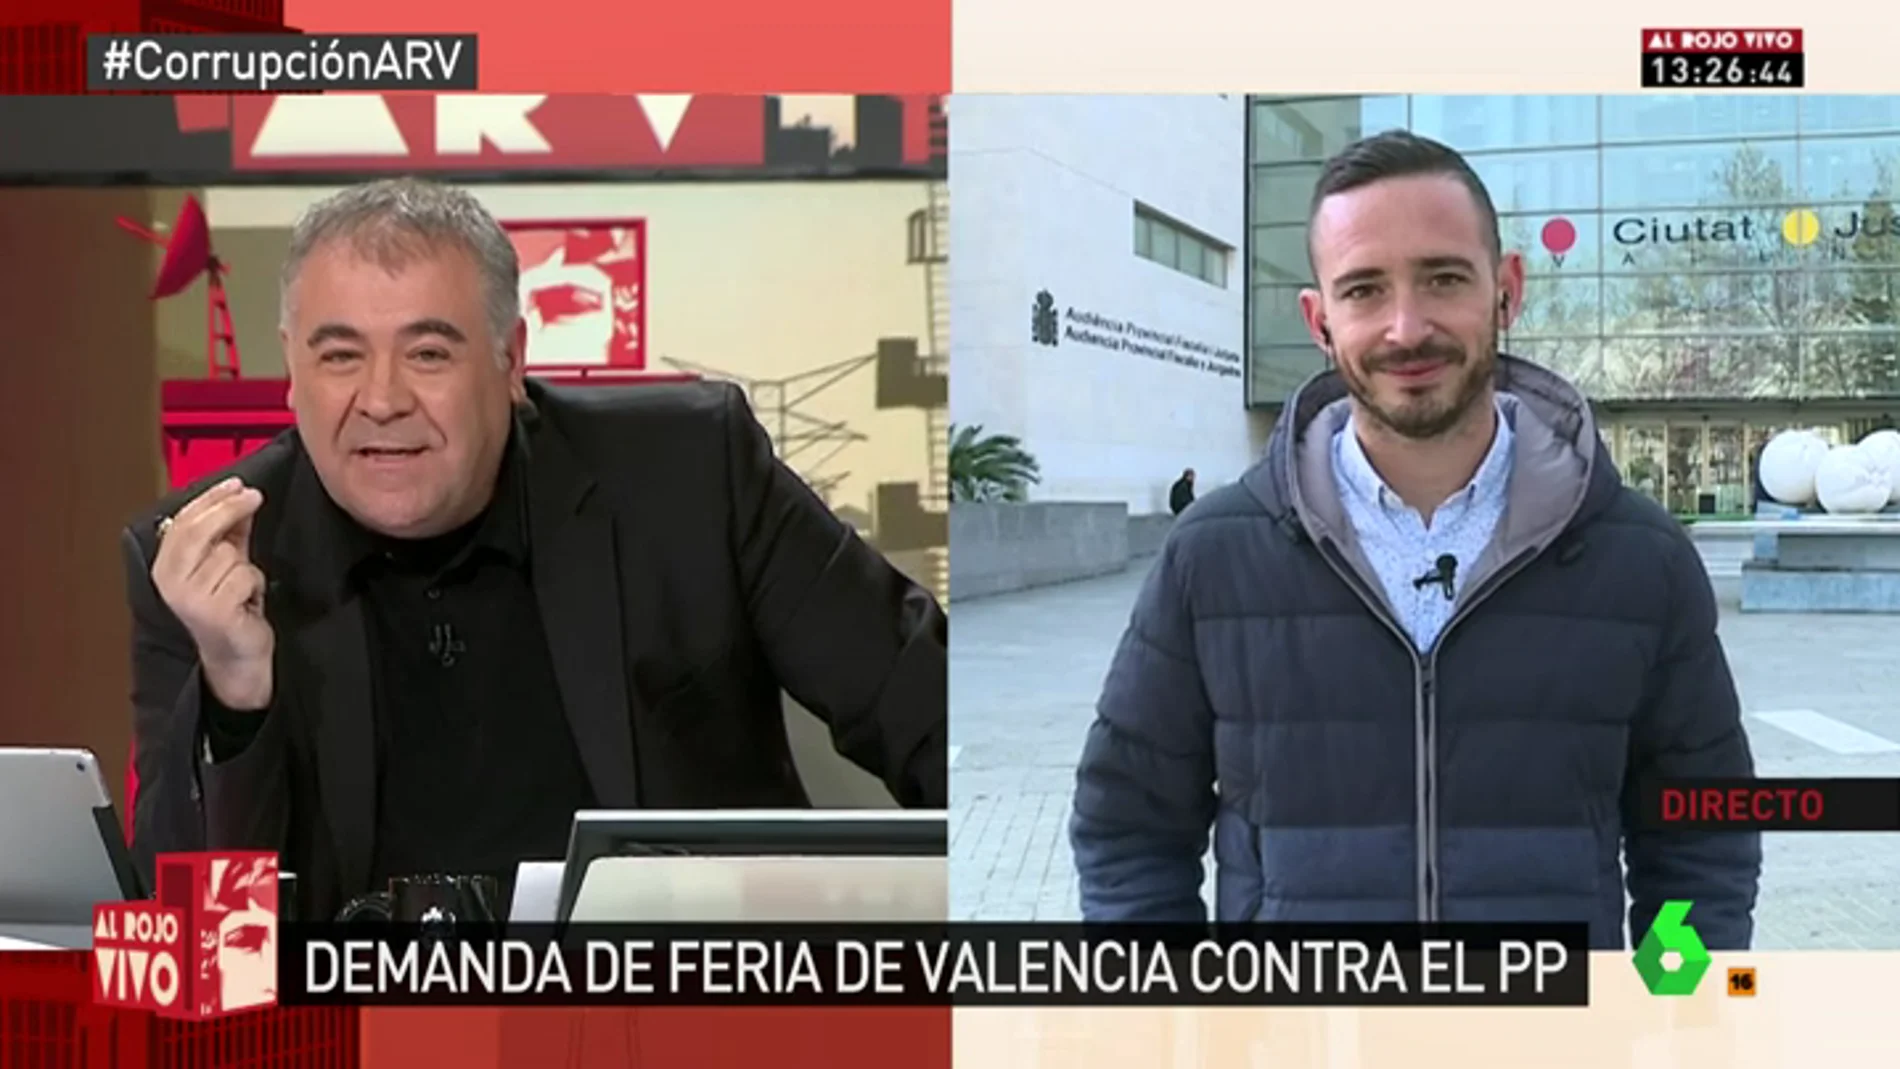 Frame 1.48626 de: Juan Nieto: "El PP lleva ocho años haciendo un auténtico 'sinpa' de más de 500.000 euros a la Feria de Valencia"